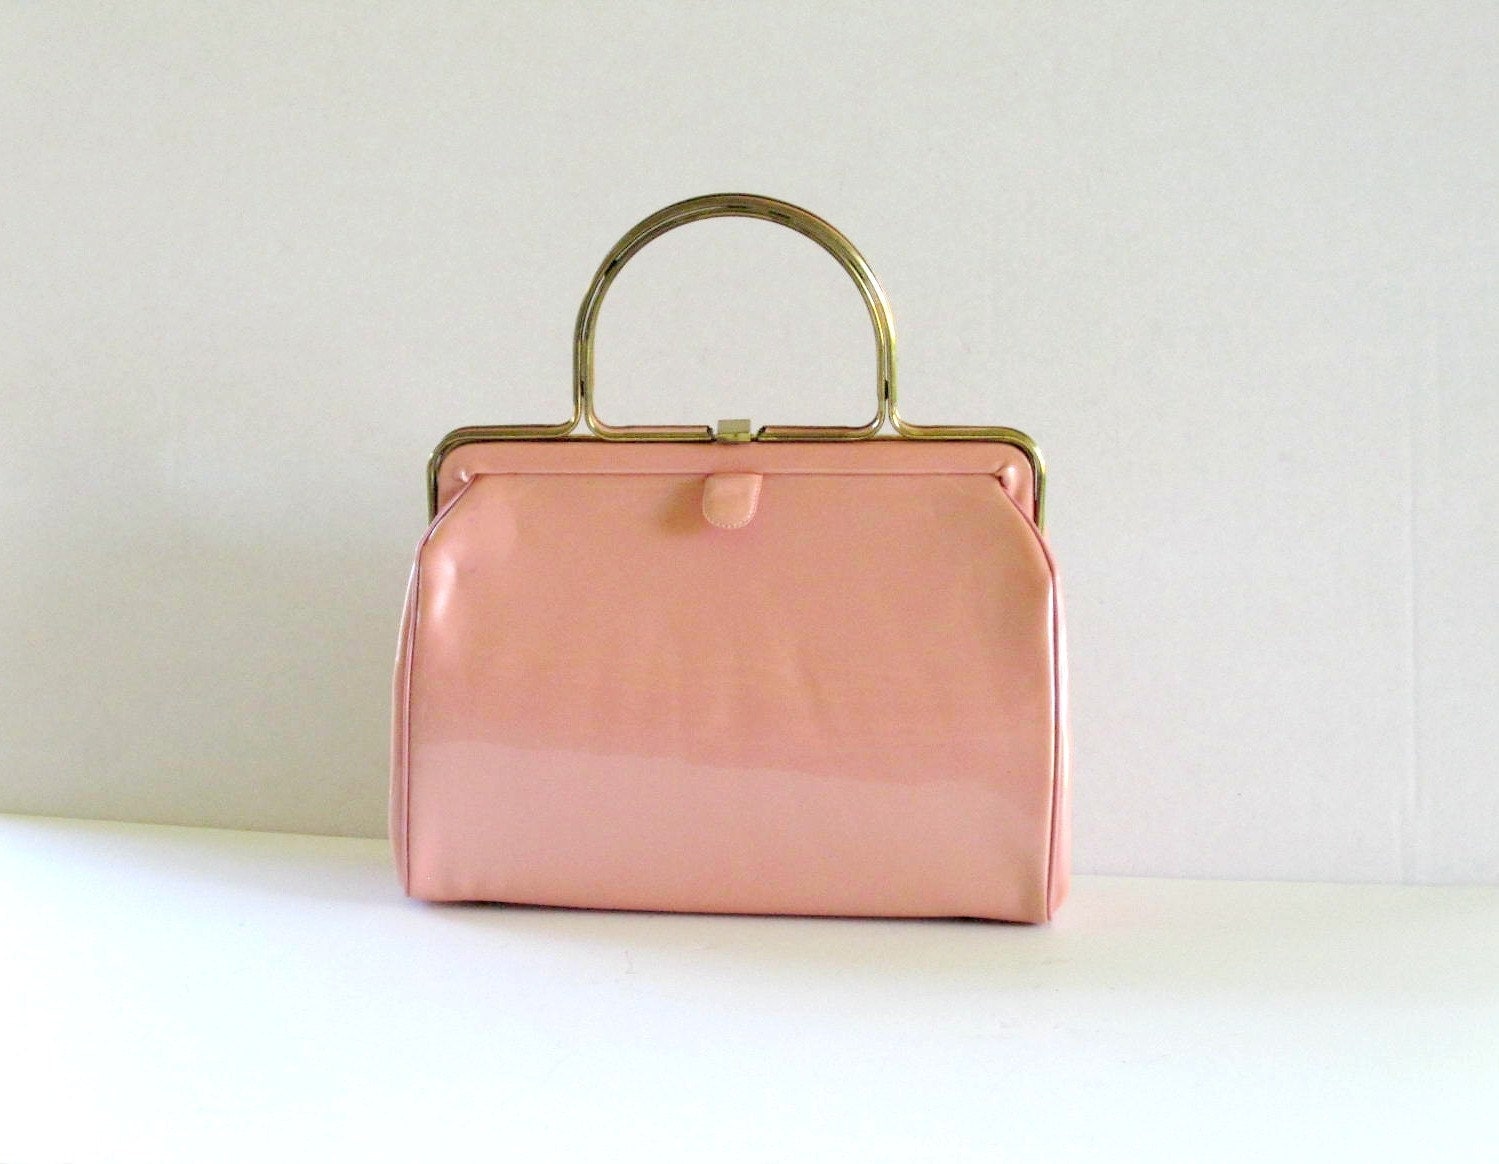 Vintage Handbag Purse Bag Patent Leather Pink Pink Handbag